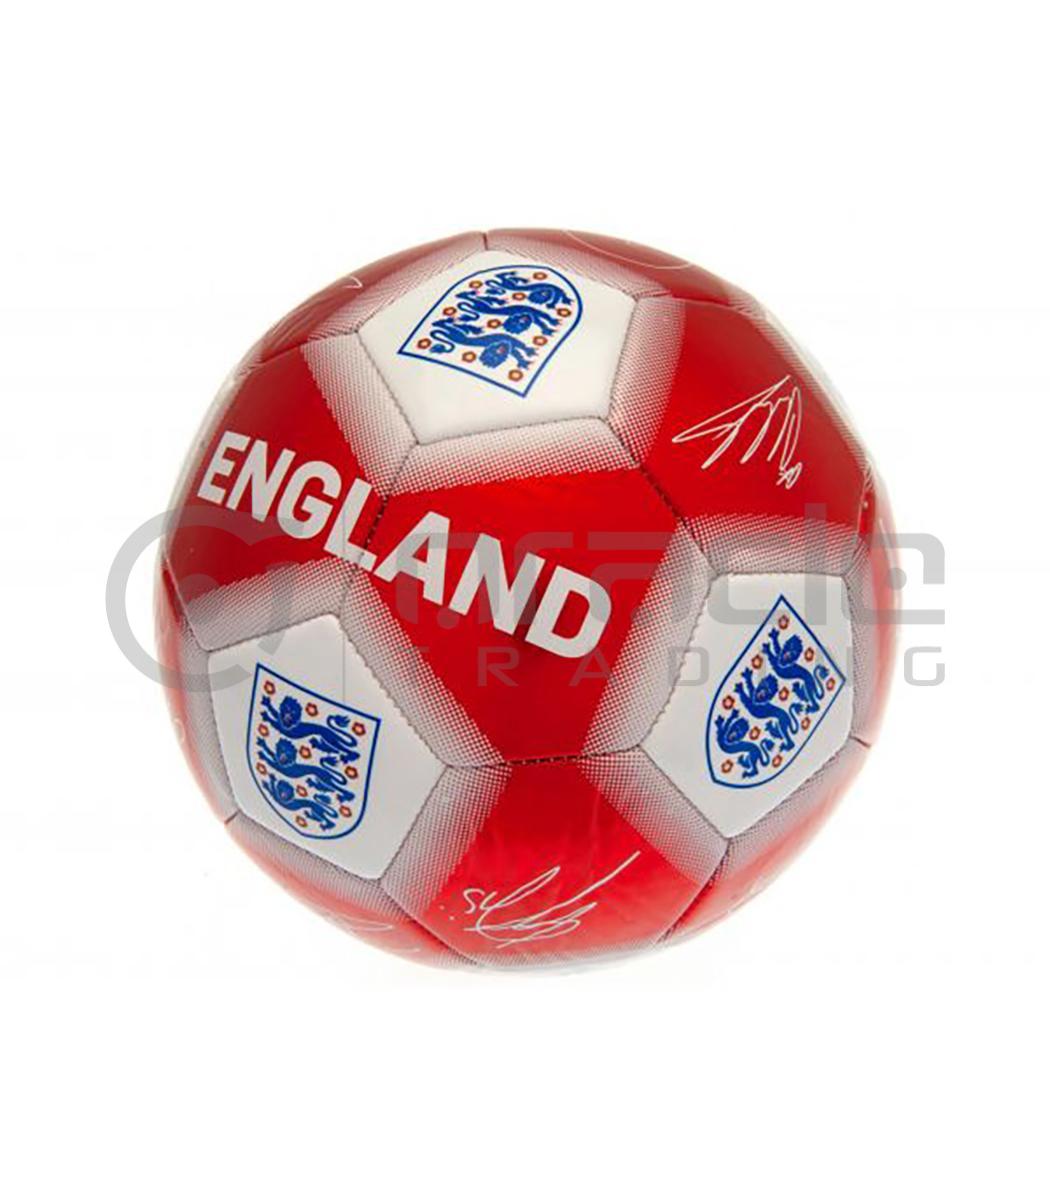 England FA Large Soccer Ball - Signature